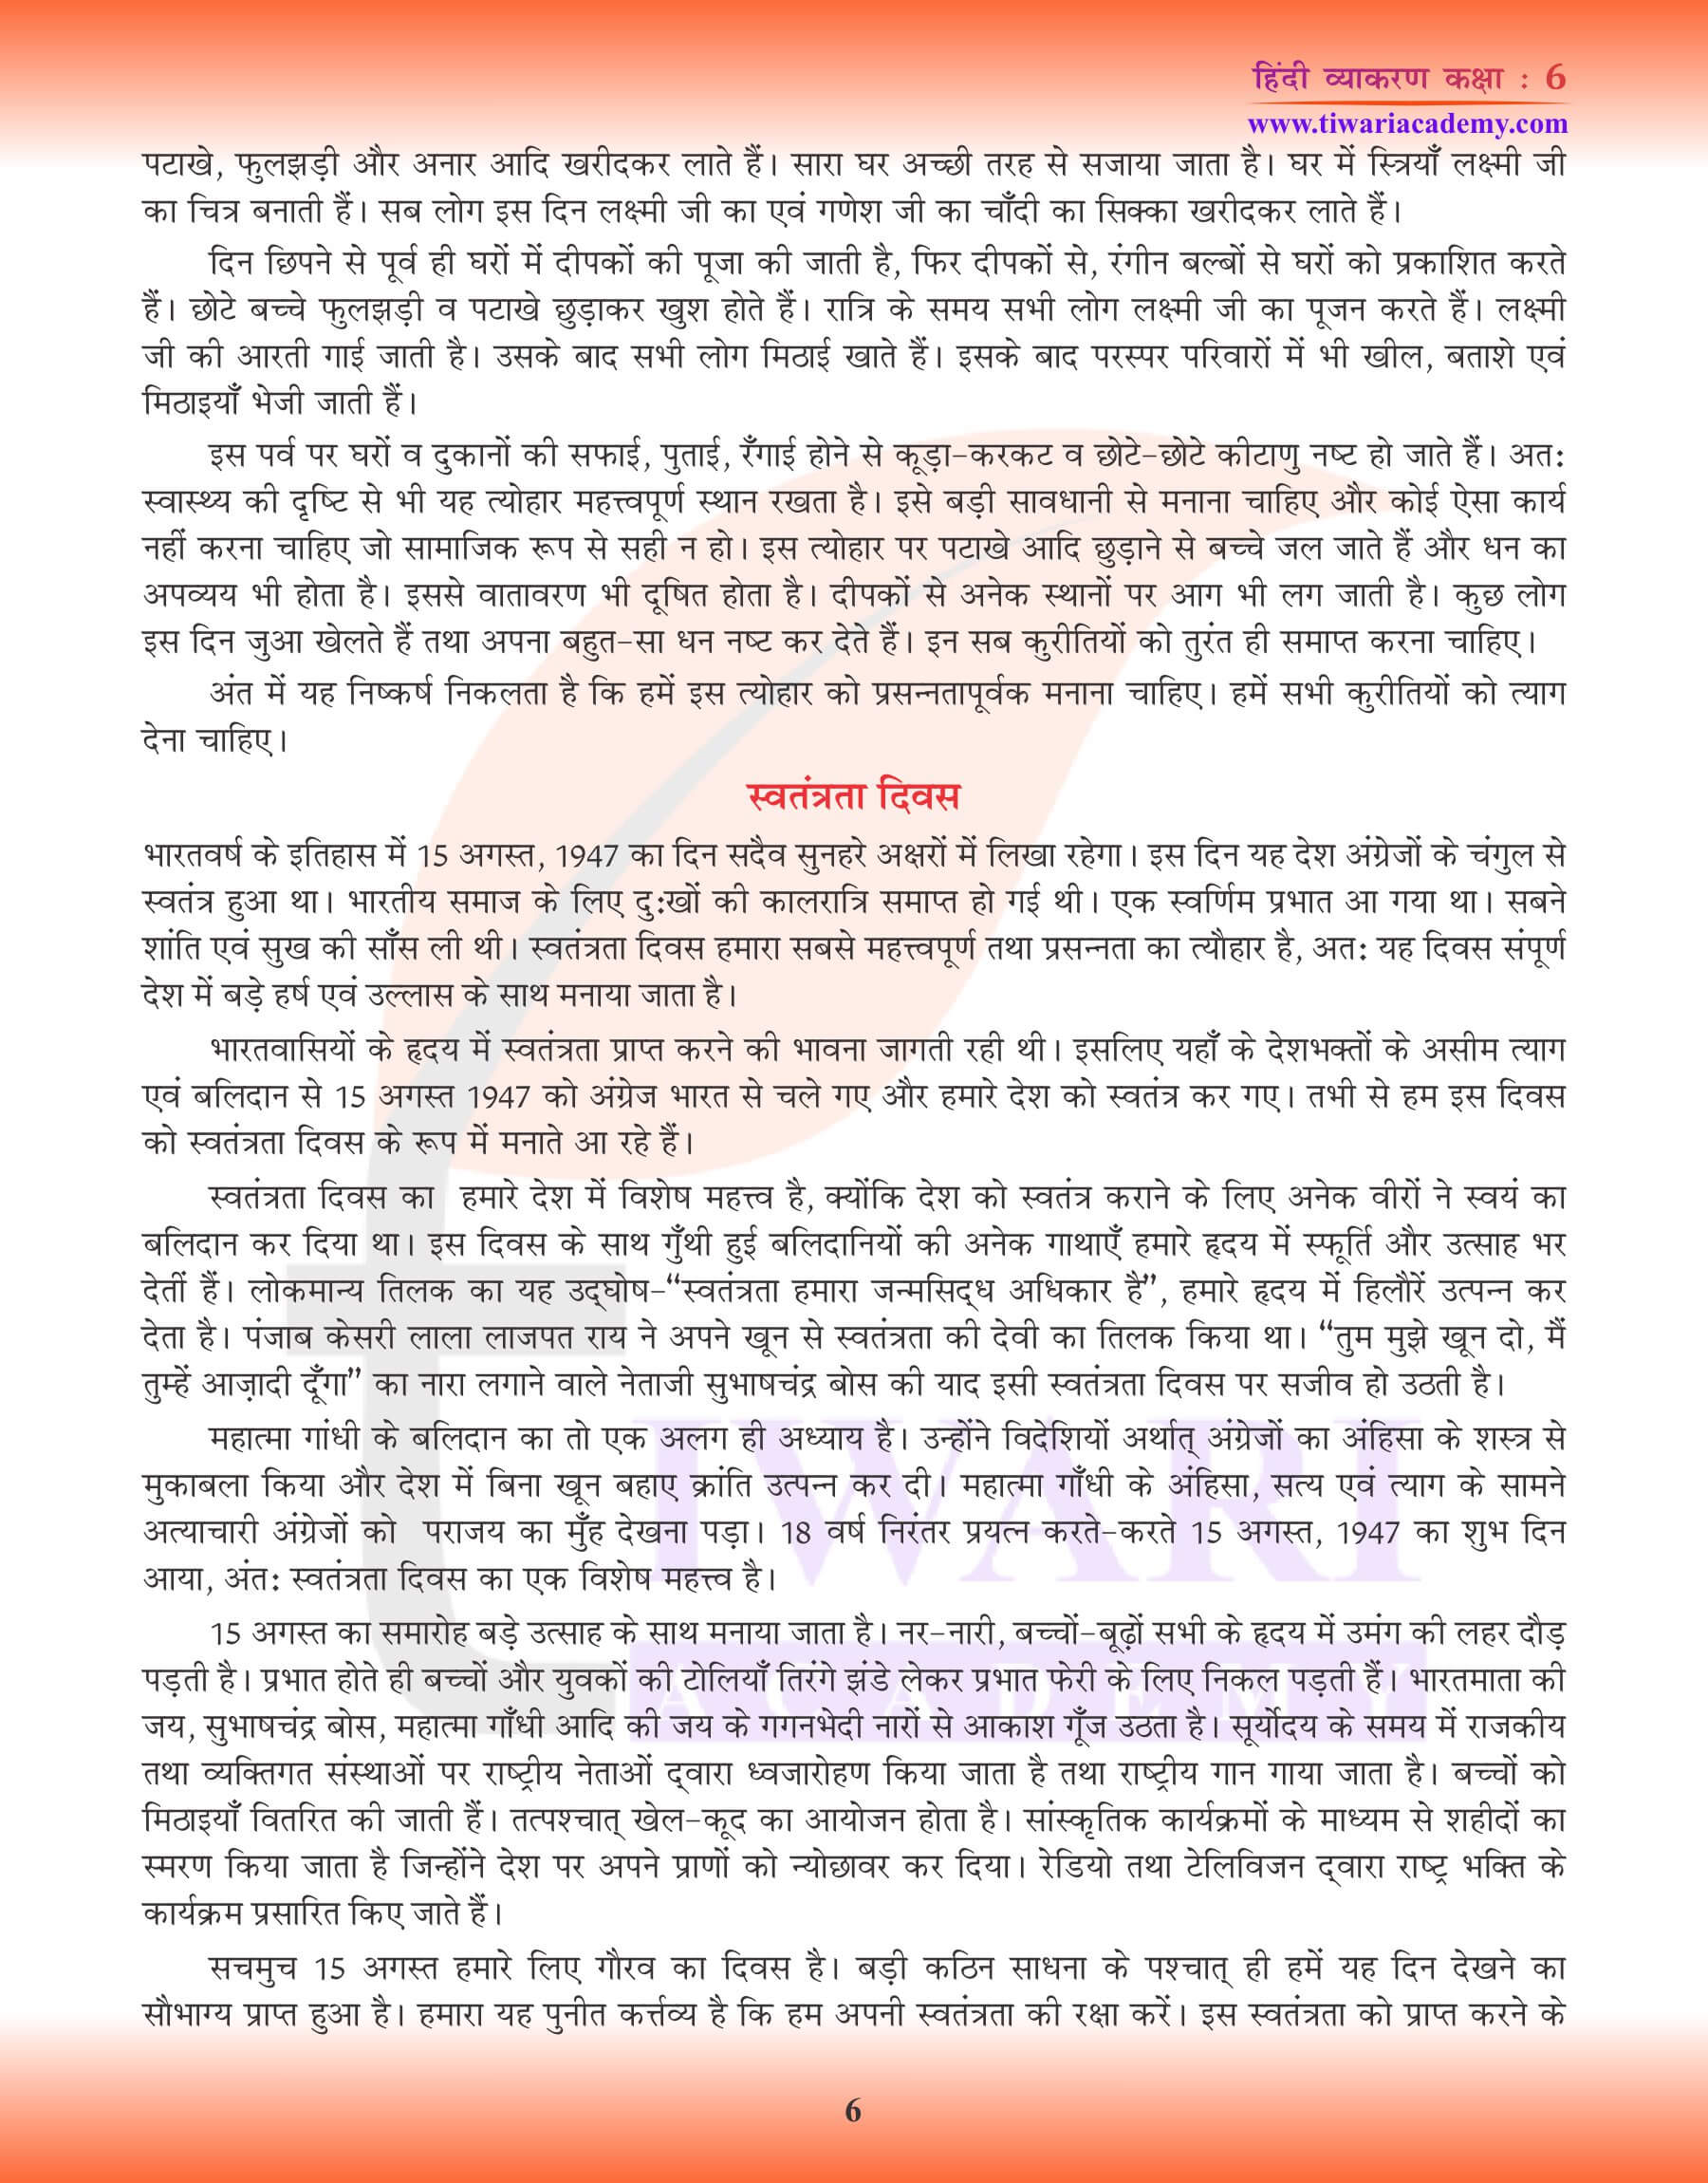 कक्षा 6 हिंदी व्याकरण निबंध कैसे लिखें